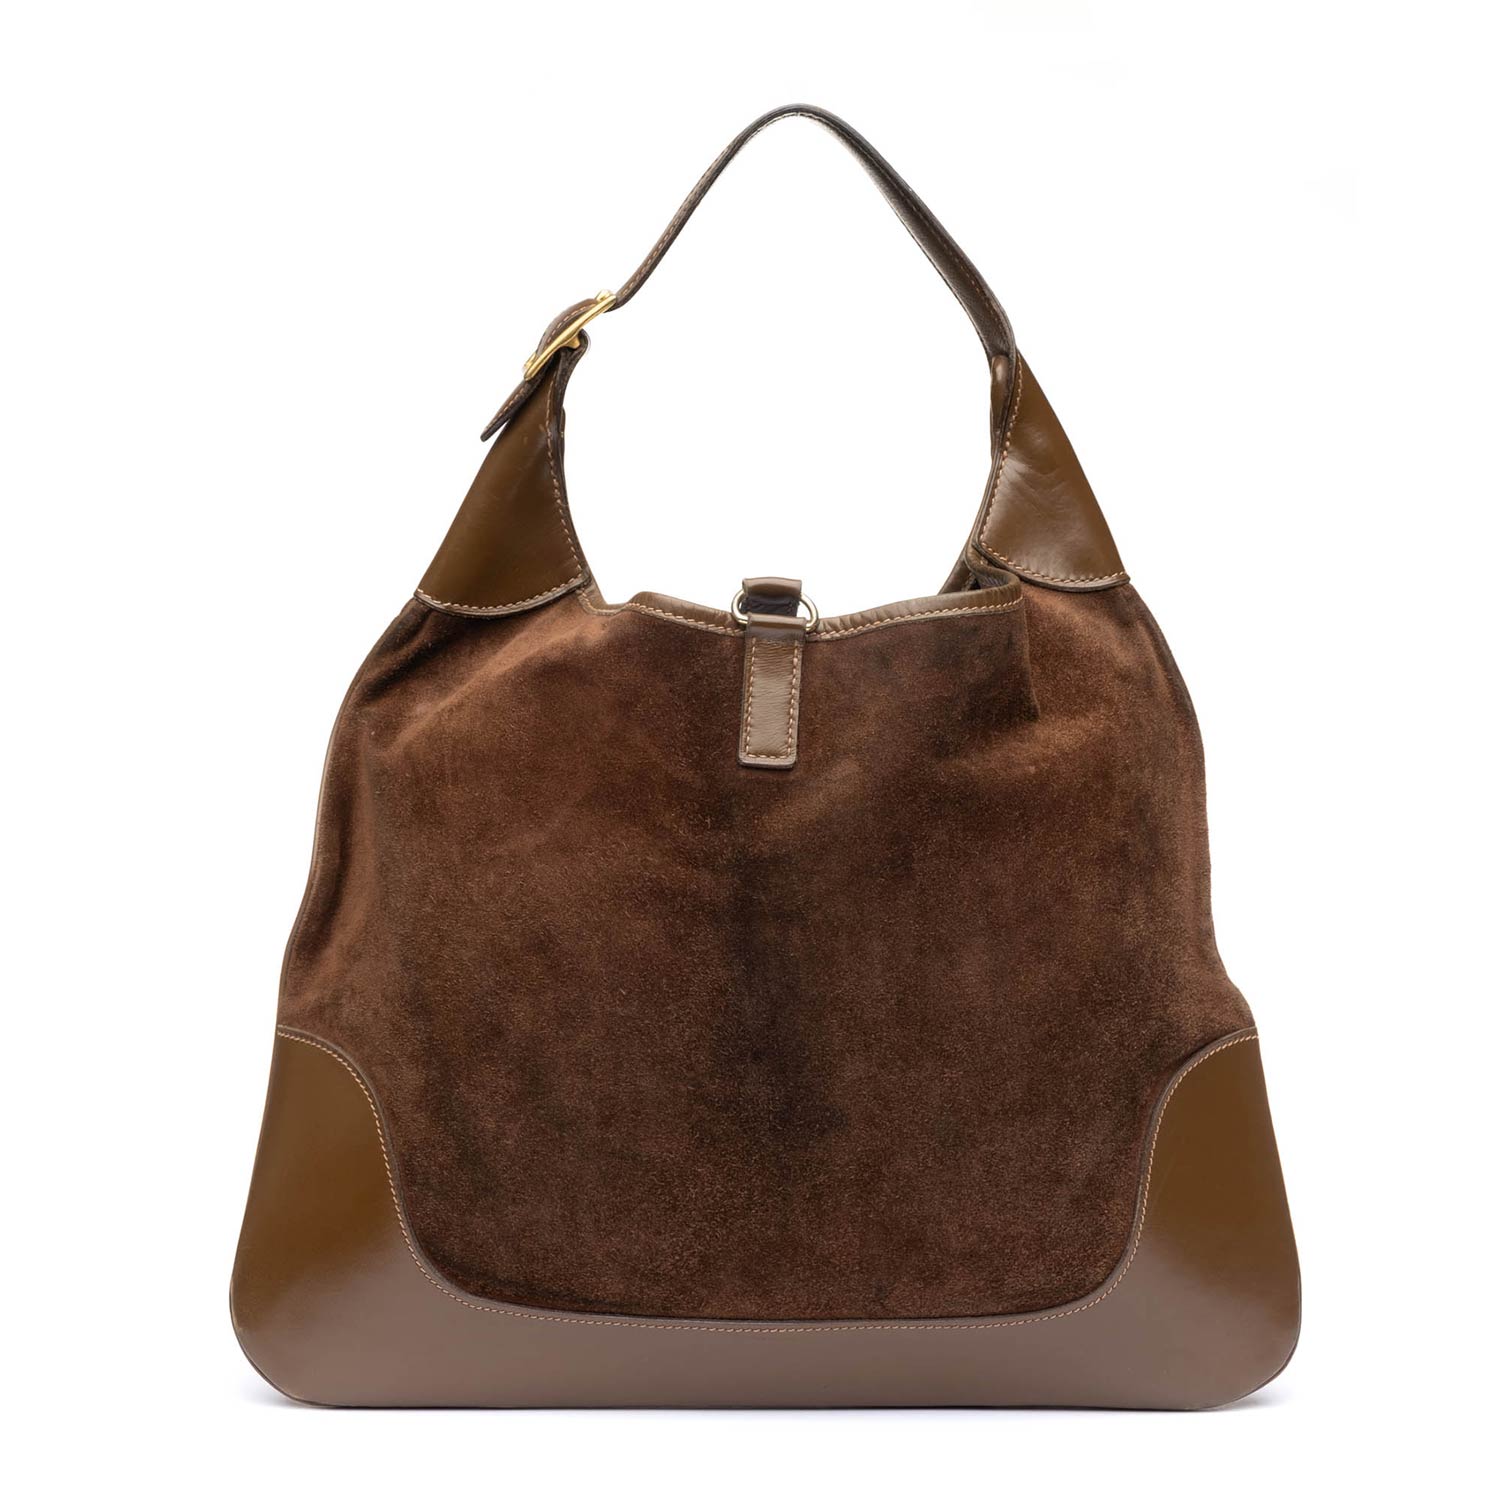 Hermes Trim  Trim bag, Bags, Fashion